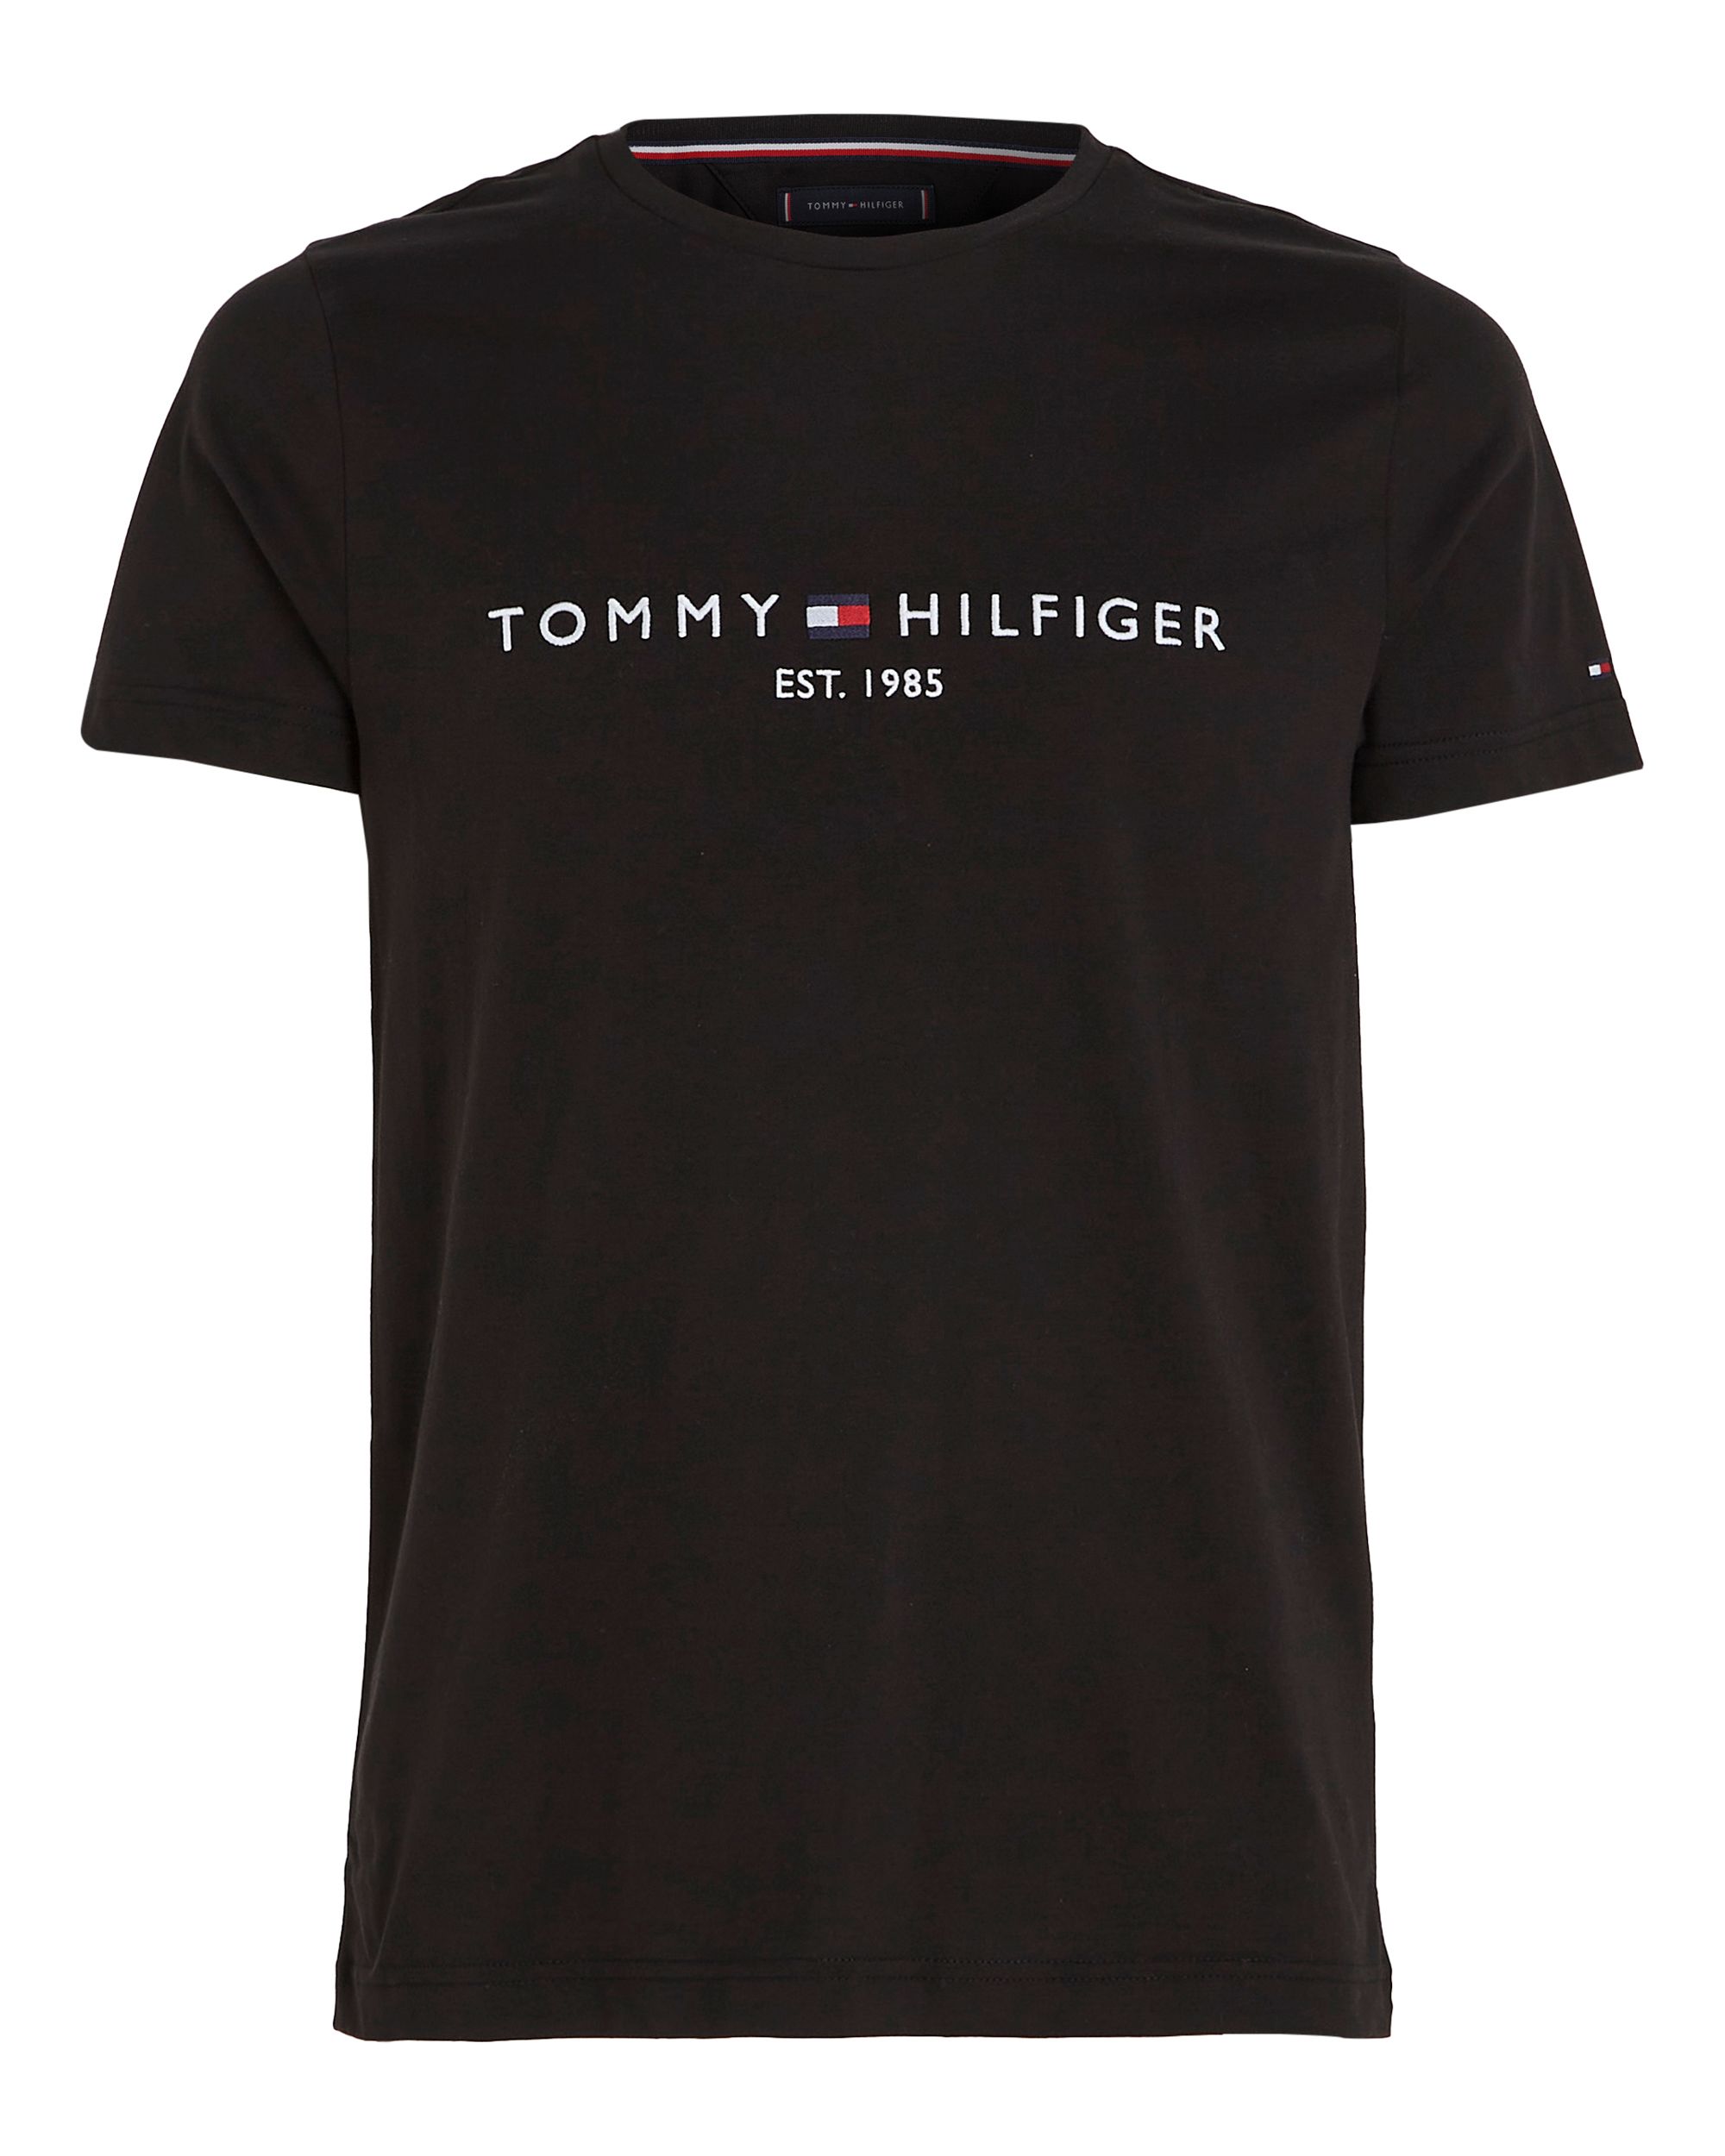 Tommy Hilfiger Menswear T-shirt KM Zwart 086995-001-L